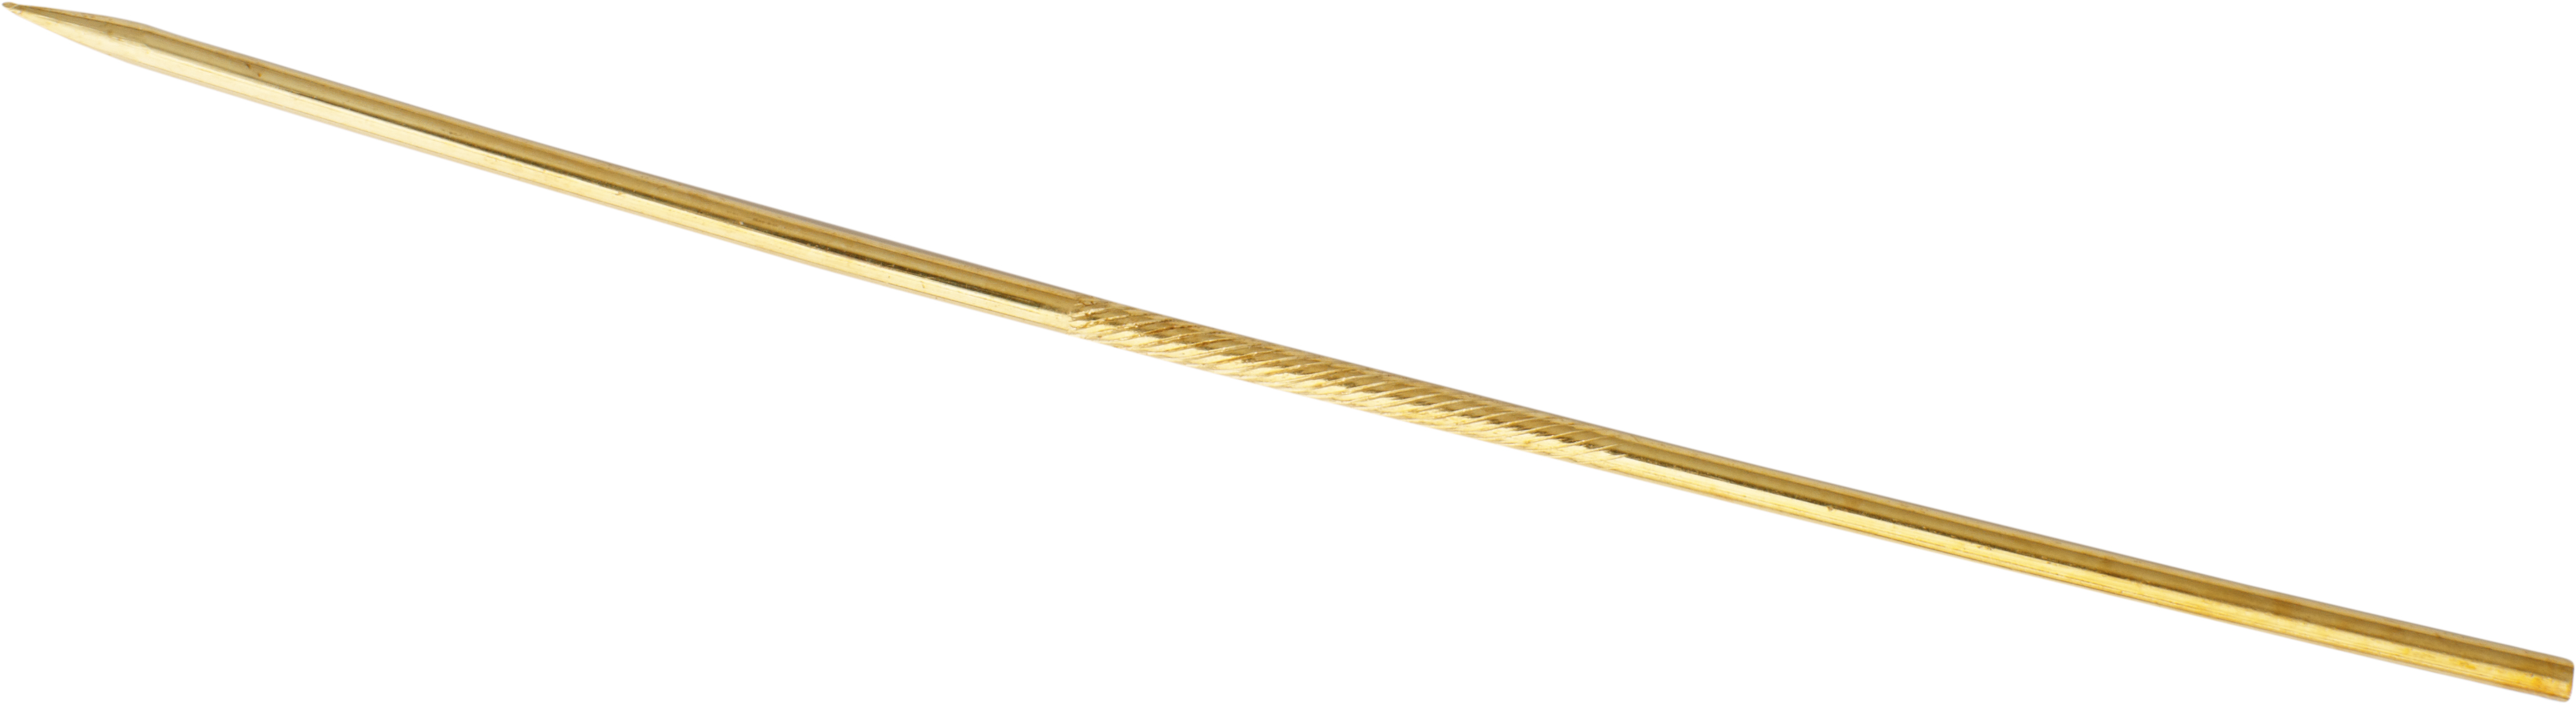 Krawattennadel Gold 585/-Gg Länge 50,00mm, gerade